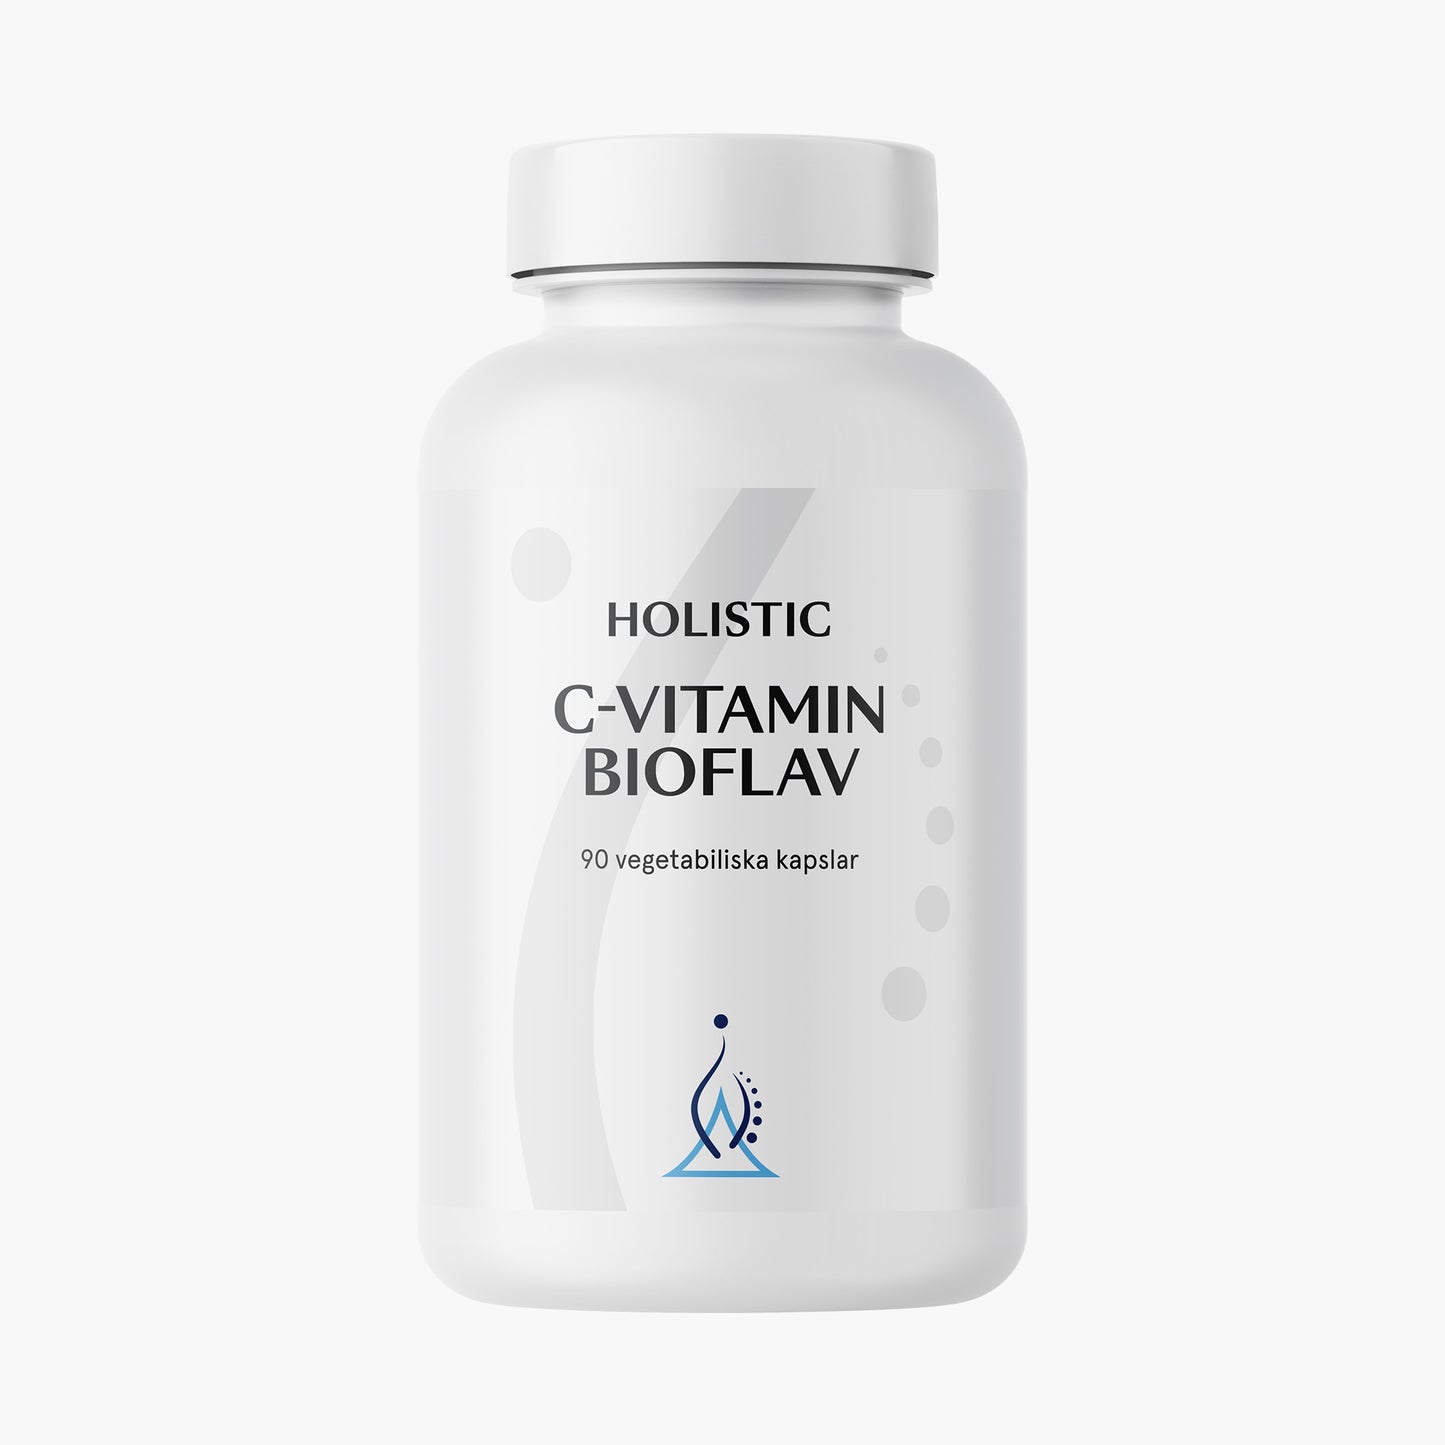 C-Vitamin Bioflav